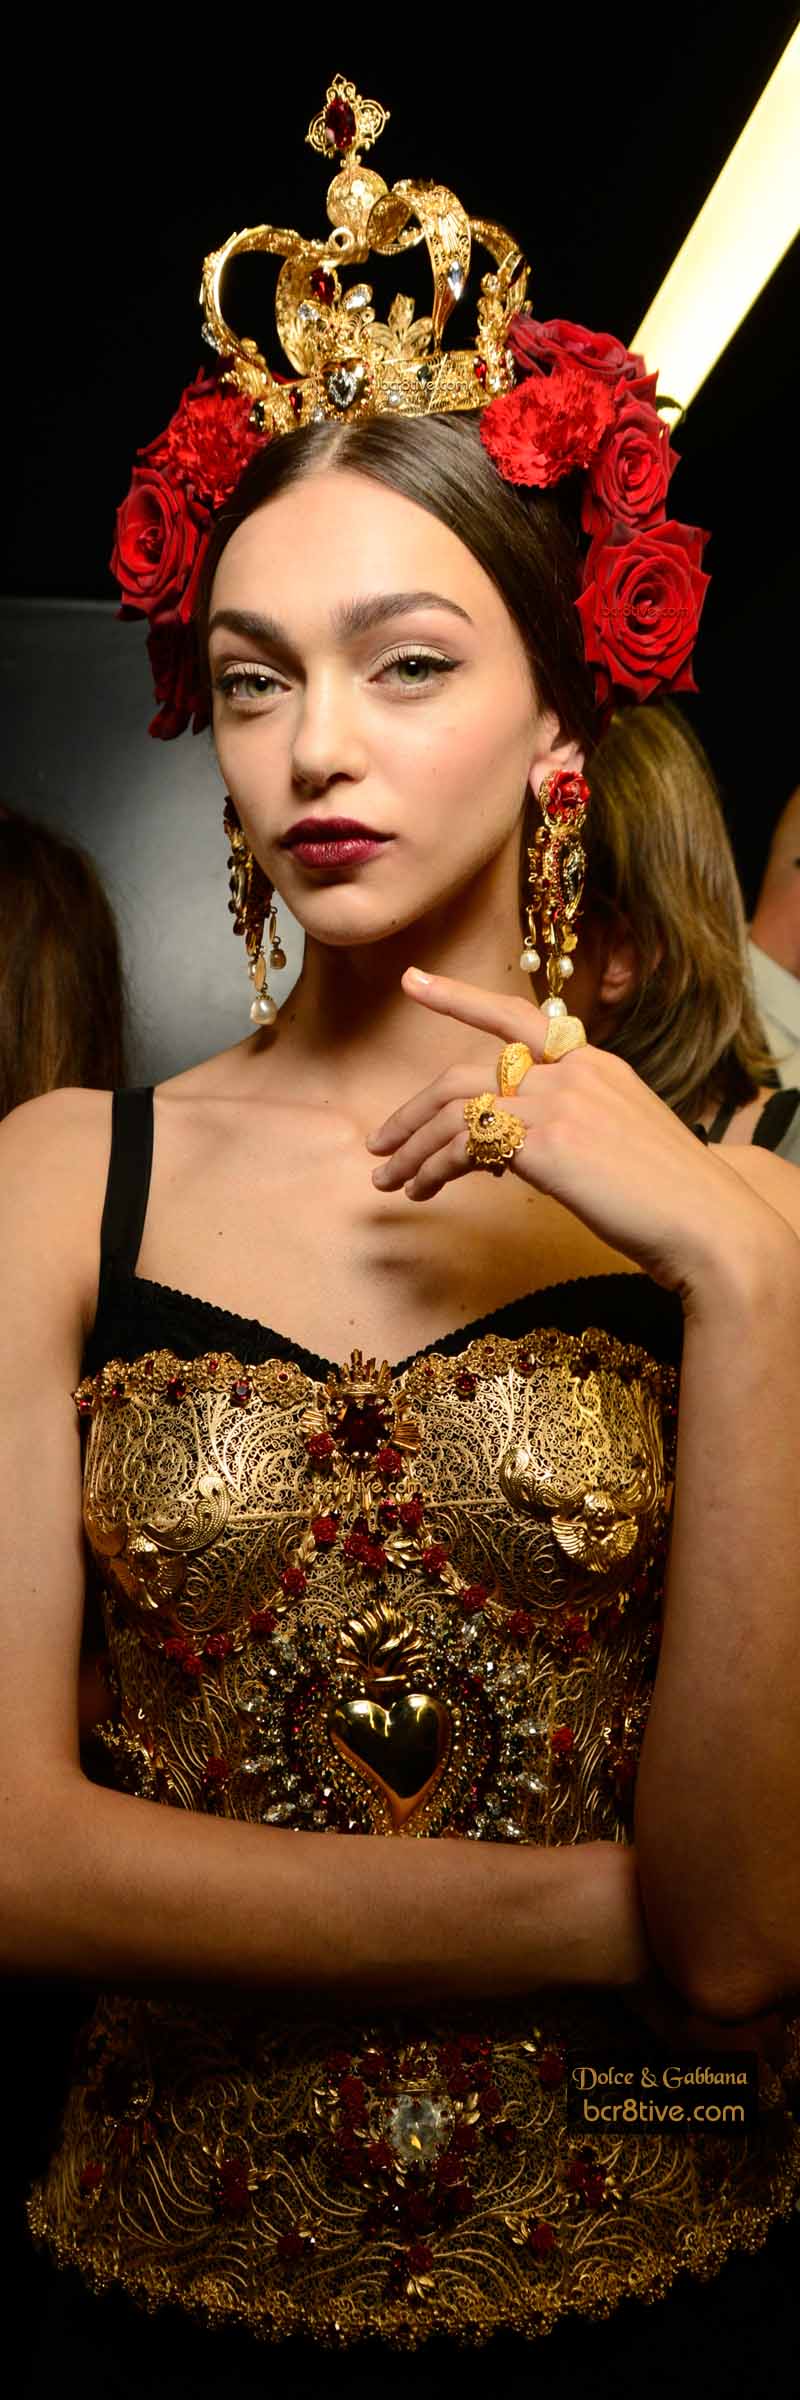 Dolce & Gabbana Spring 2015 – Be Creative